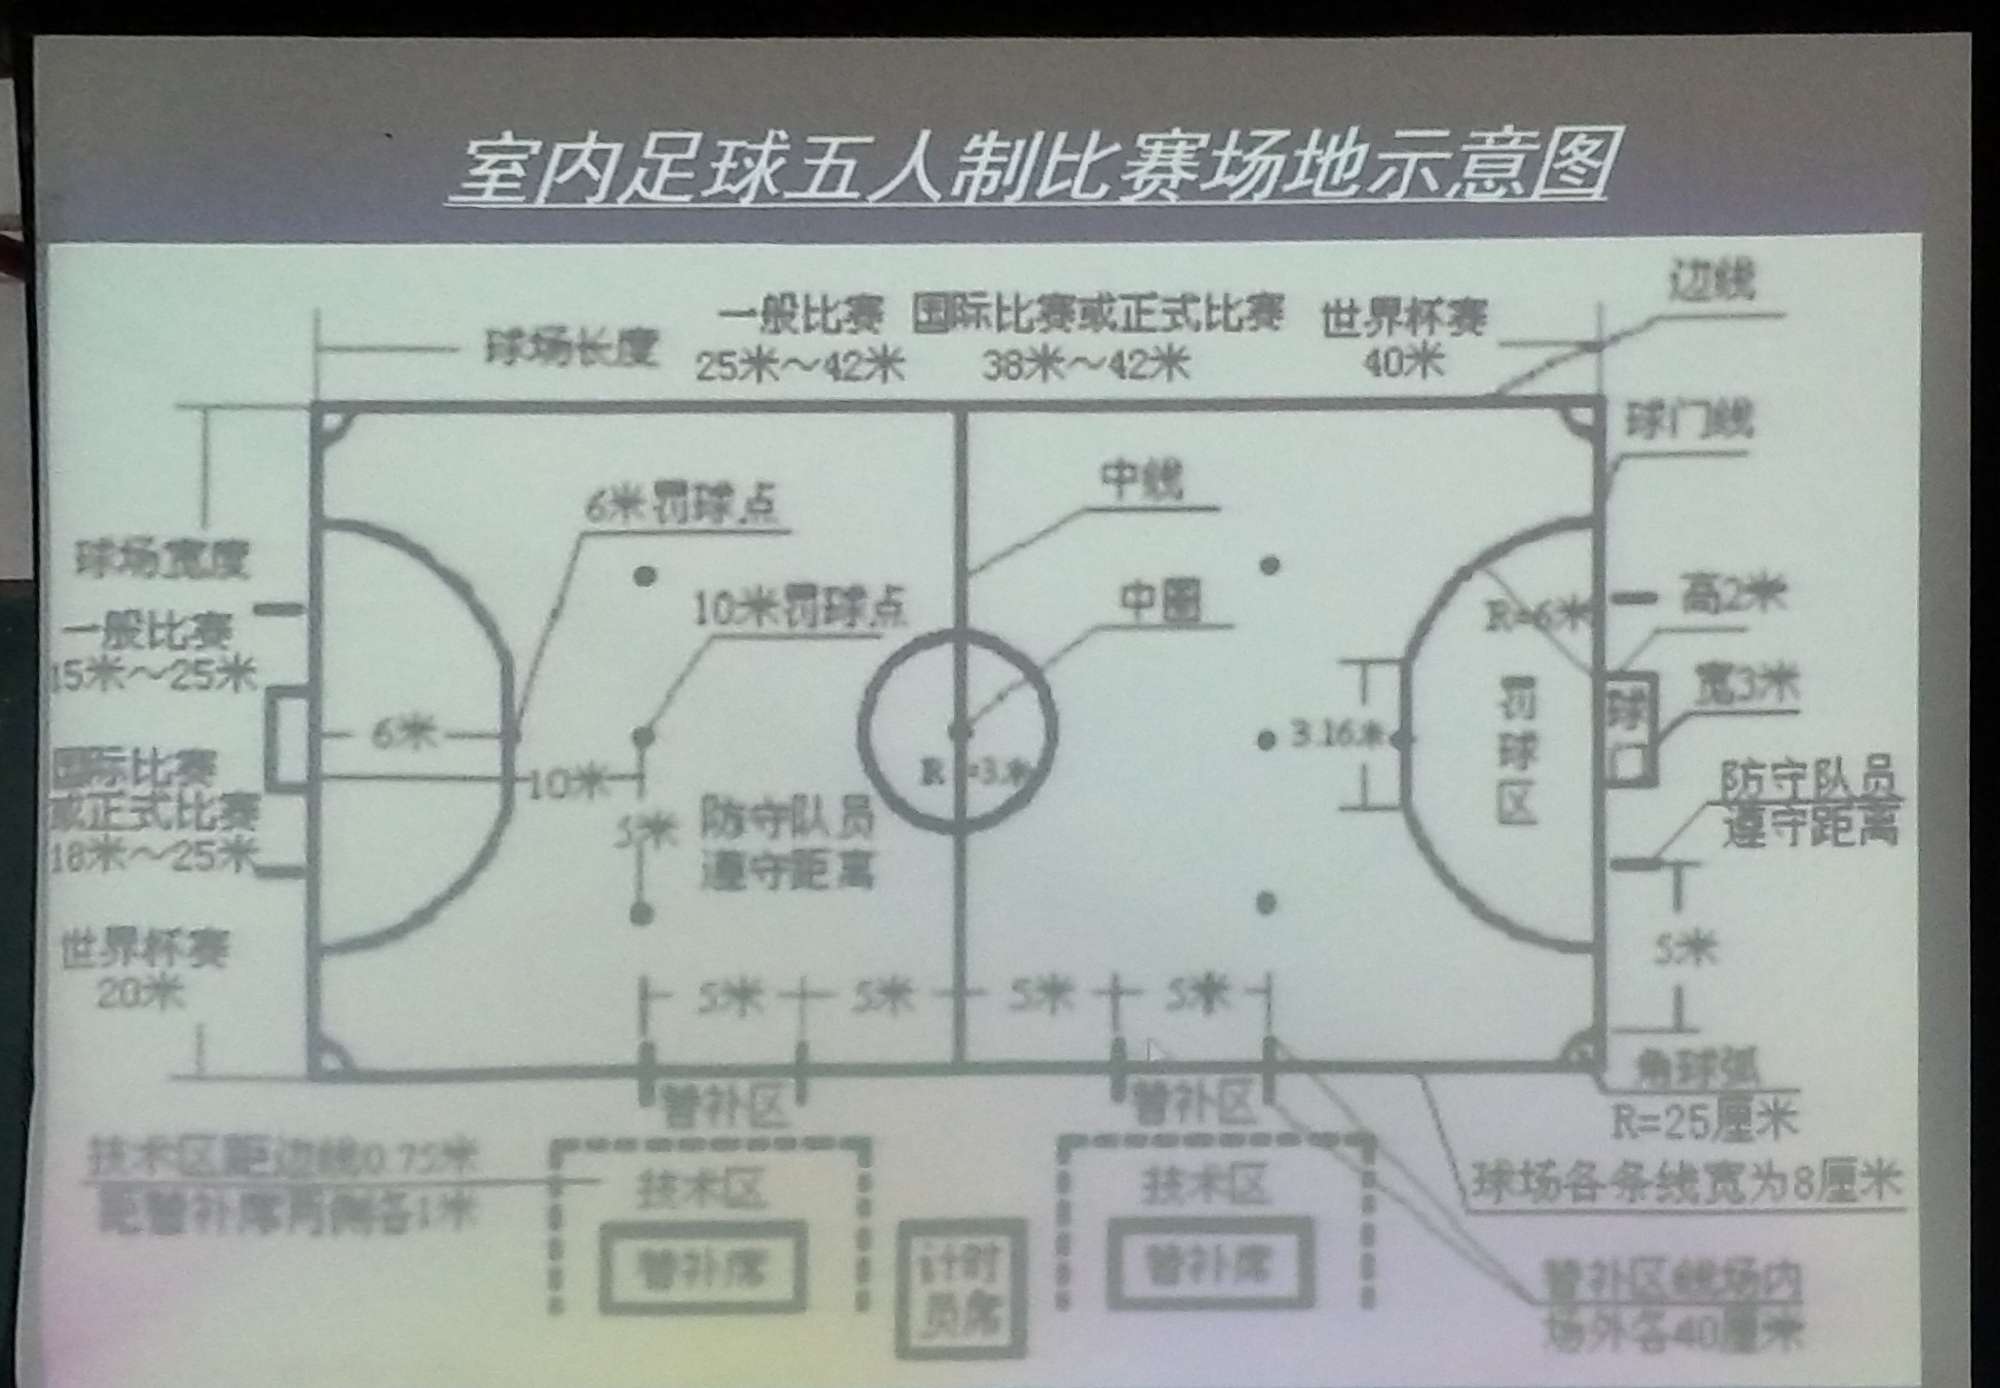 中国室内五人制足球超级联赛19日在深圳打响(组图)